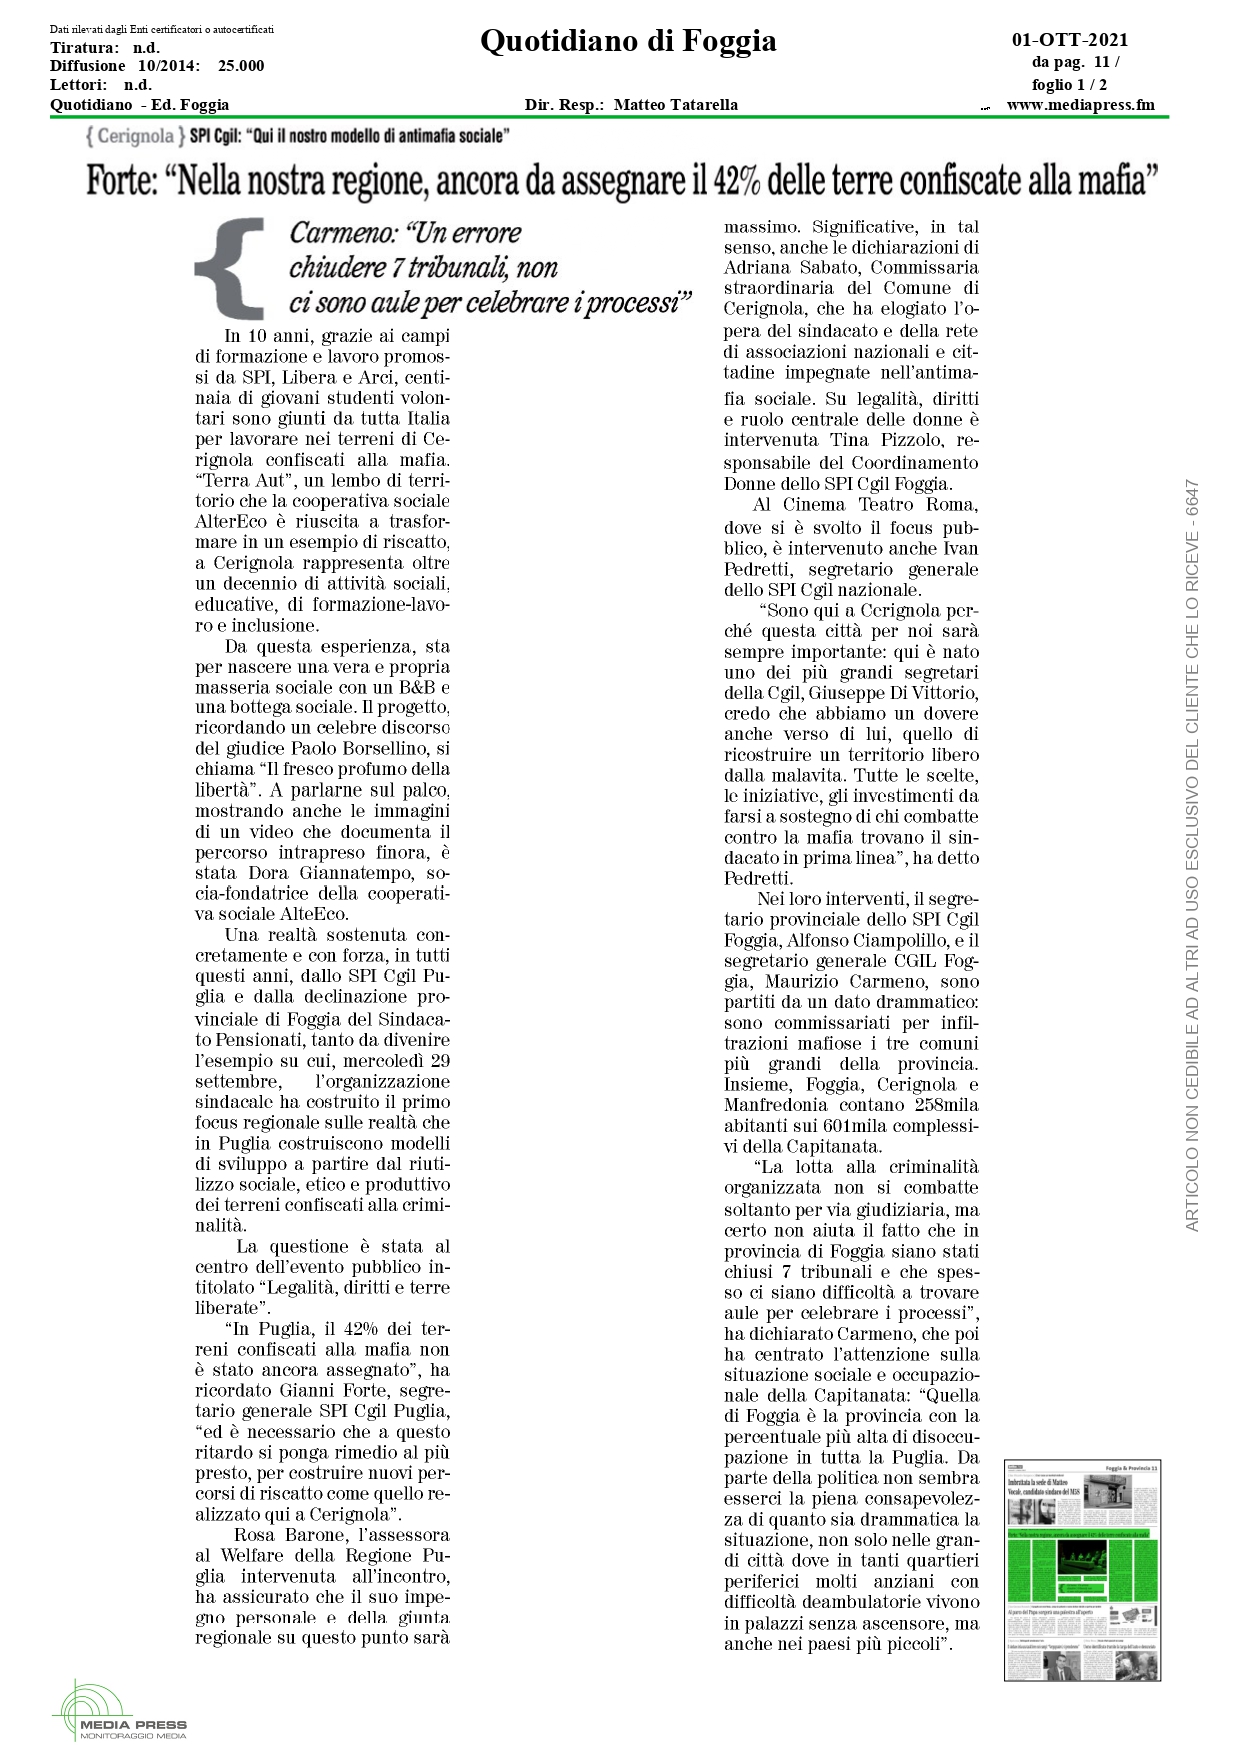 Quotidiano di Foggia su Cerignola_page-0001